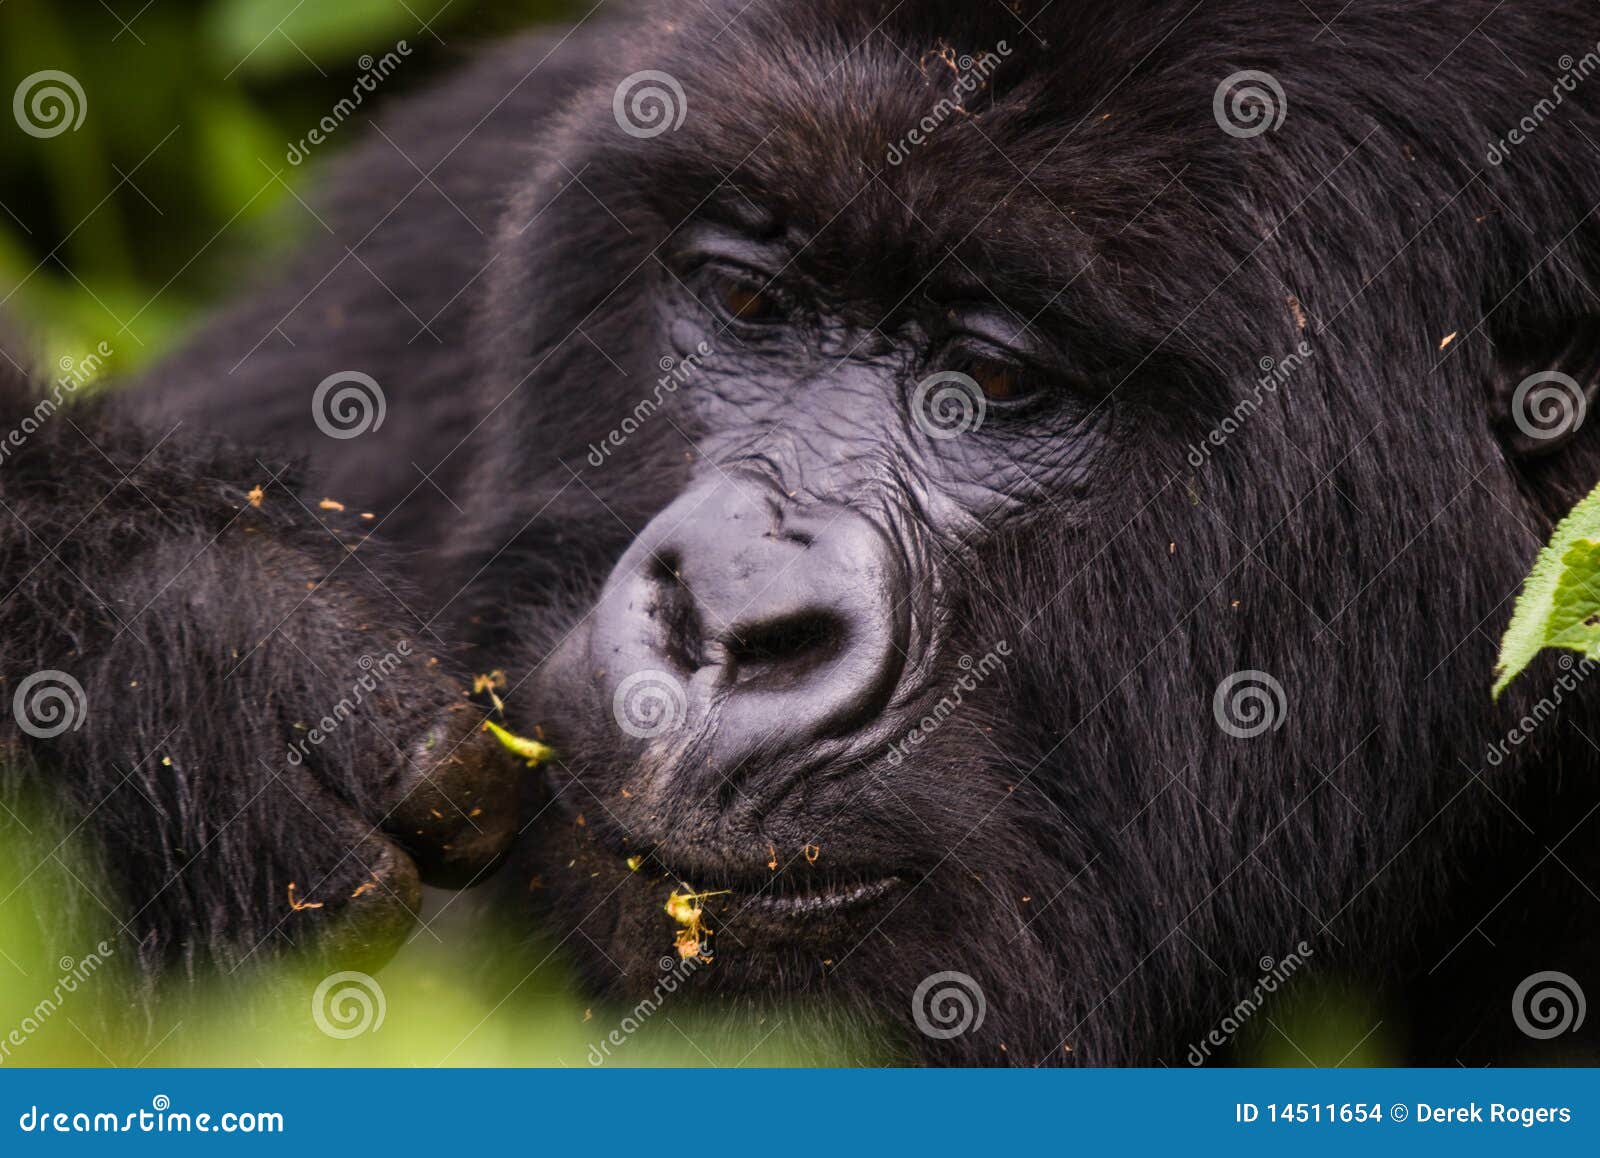 closeup rwanda gorilla eating